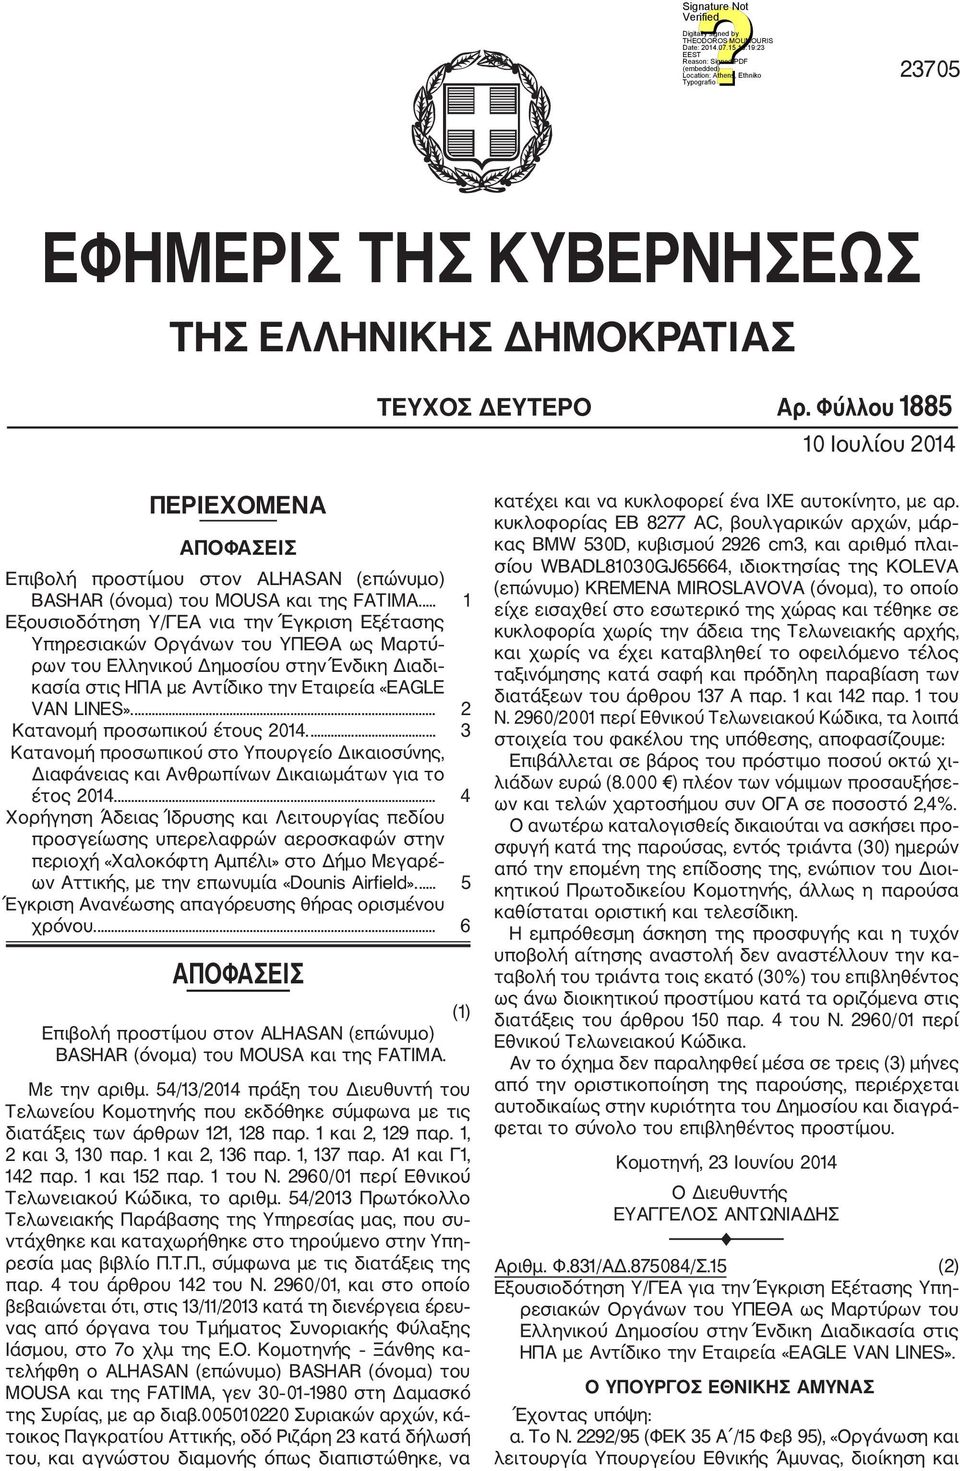 ... 1 Εξουσιοδότηση Υ/ΓΕΑ νια την Έγκριση Εξέτασης Υπηρεσιακών Οργάνων του ΥΠΕΘΑ ως Μαρτύ ρων του Ελληνικού Δημοσίου στην Ένδικη Διαδι κασία στις ΗΠΑ με Αντίδικο την Εταιρεία «EAGLE VAN LINES».